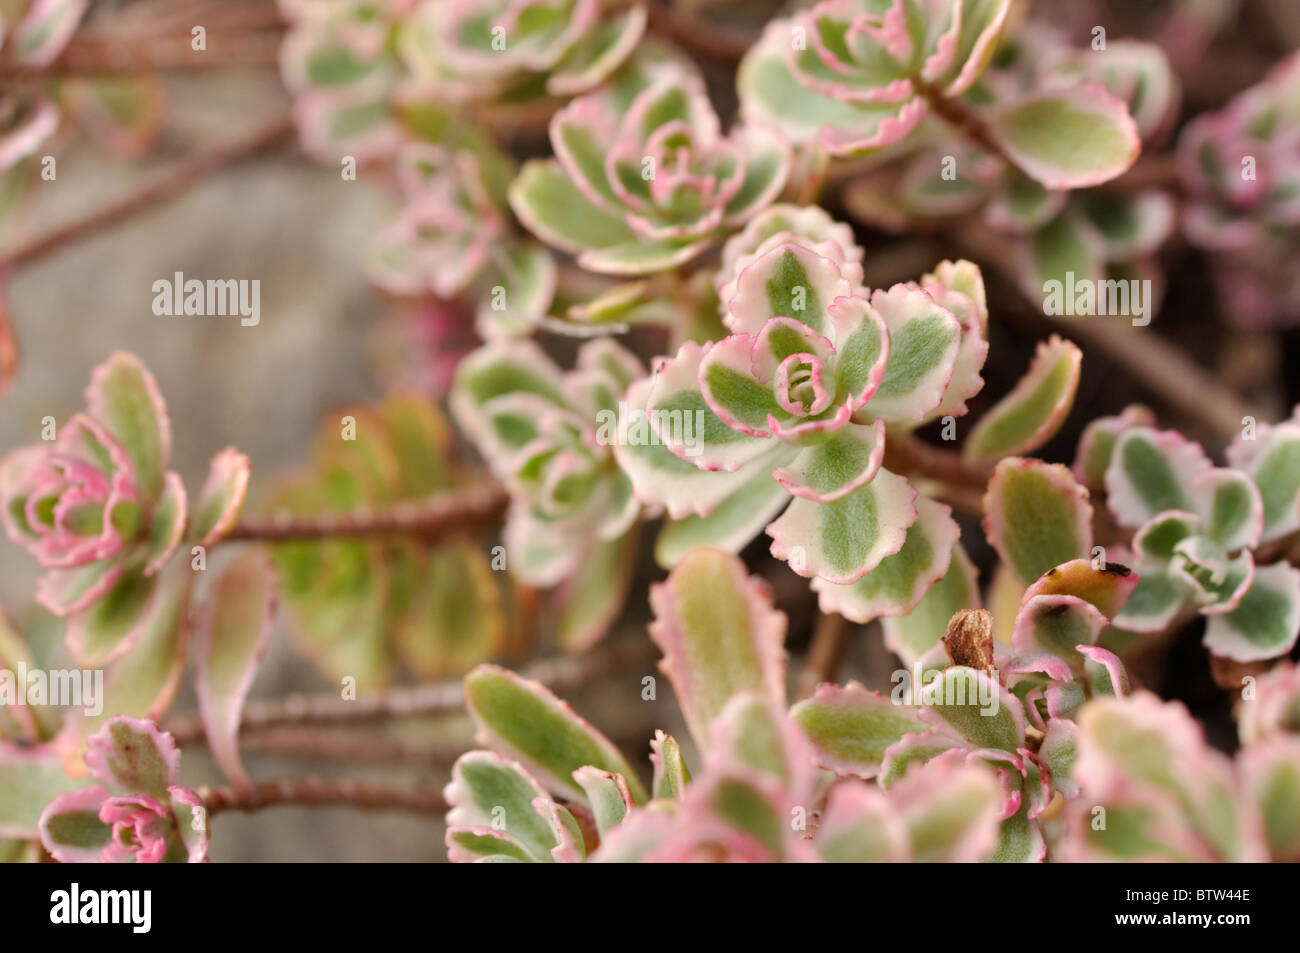 Two row stonecrop (Sedum spurium 'Tricolor' syn. Phedimus spurius 'Fuldaglut') Stock Photo